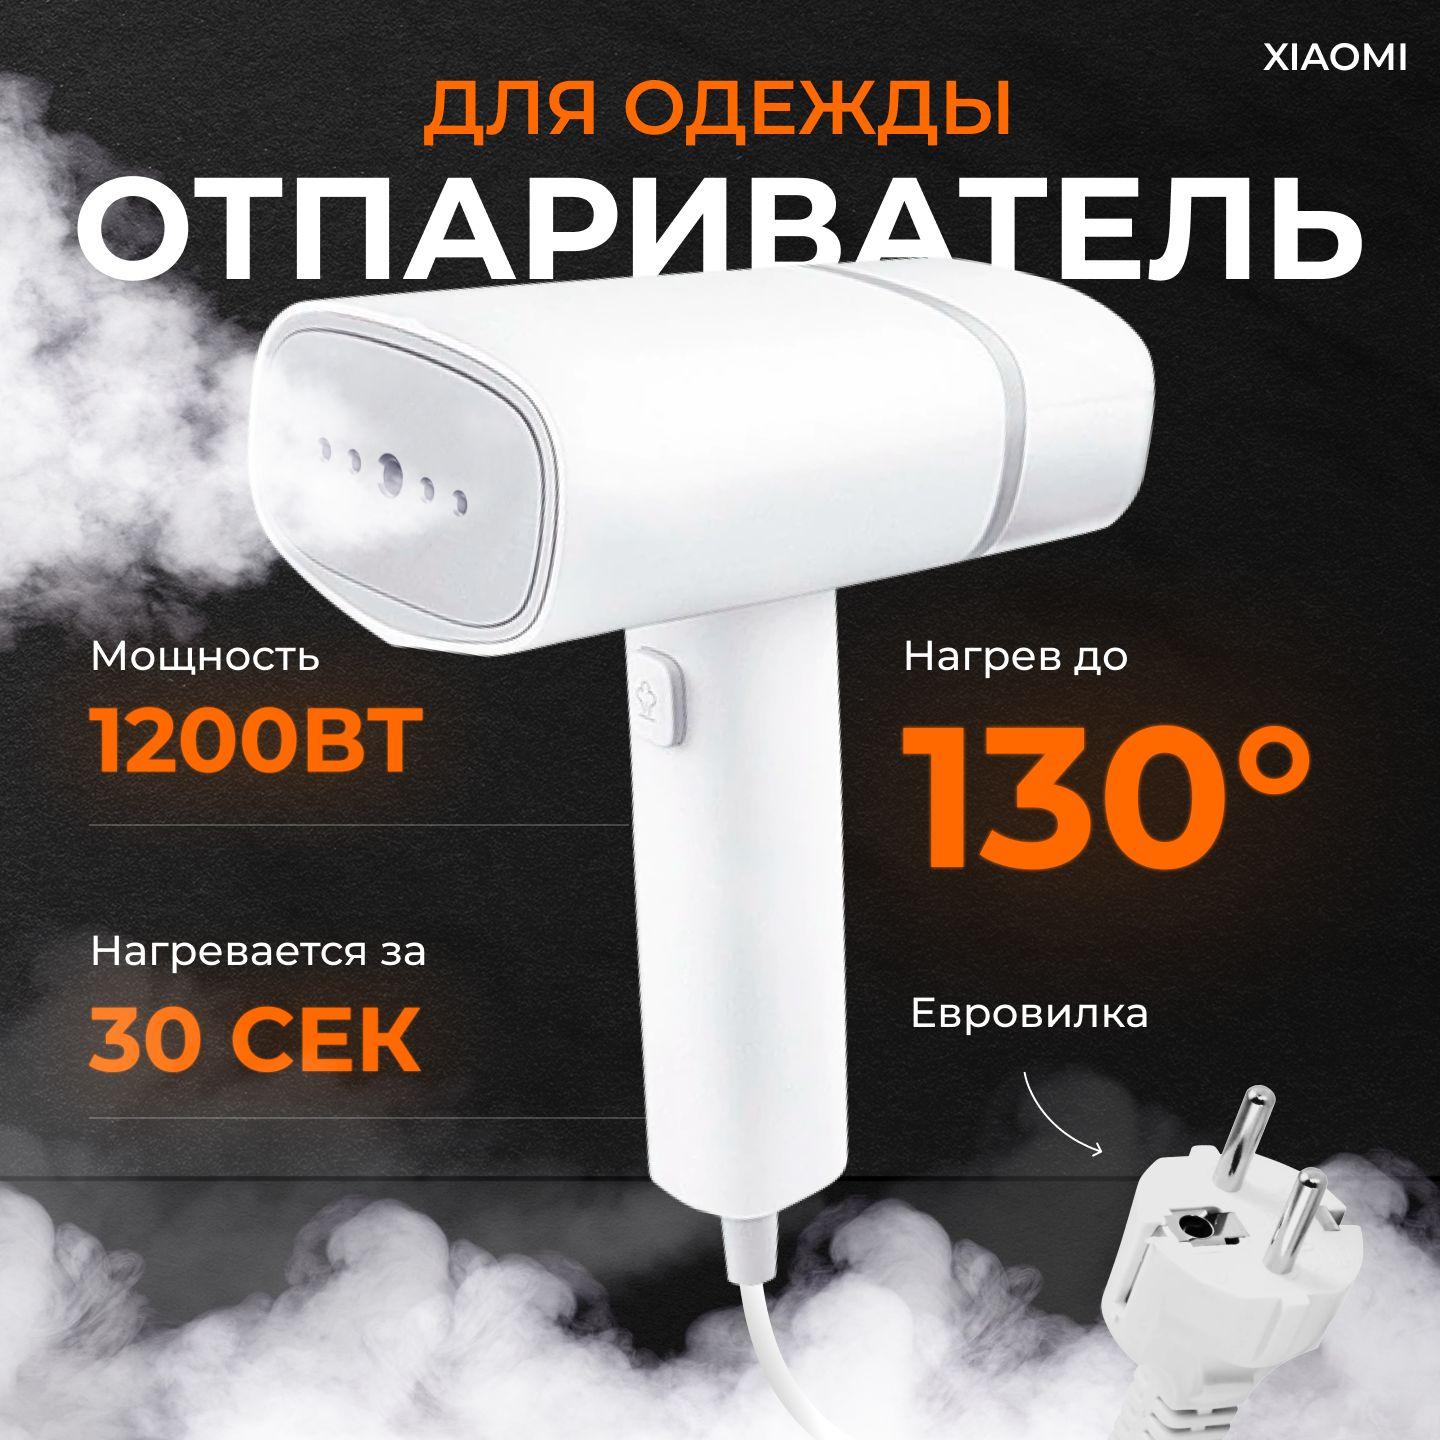 Ручной отпариватель Lofans GT-306LW экосистема Xiaomi, Русская версия, белый